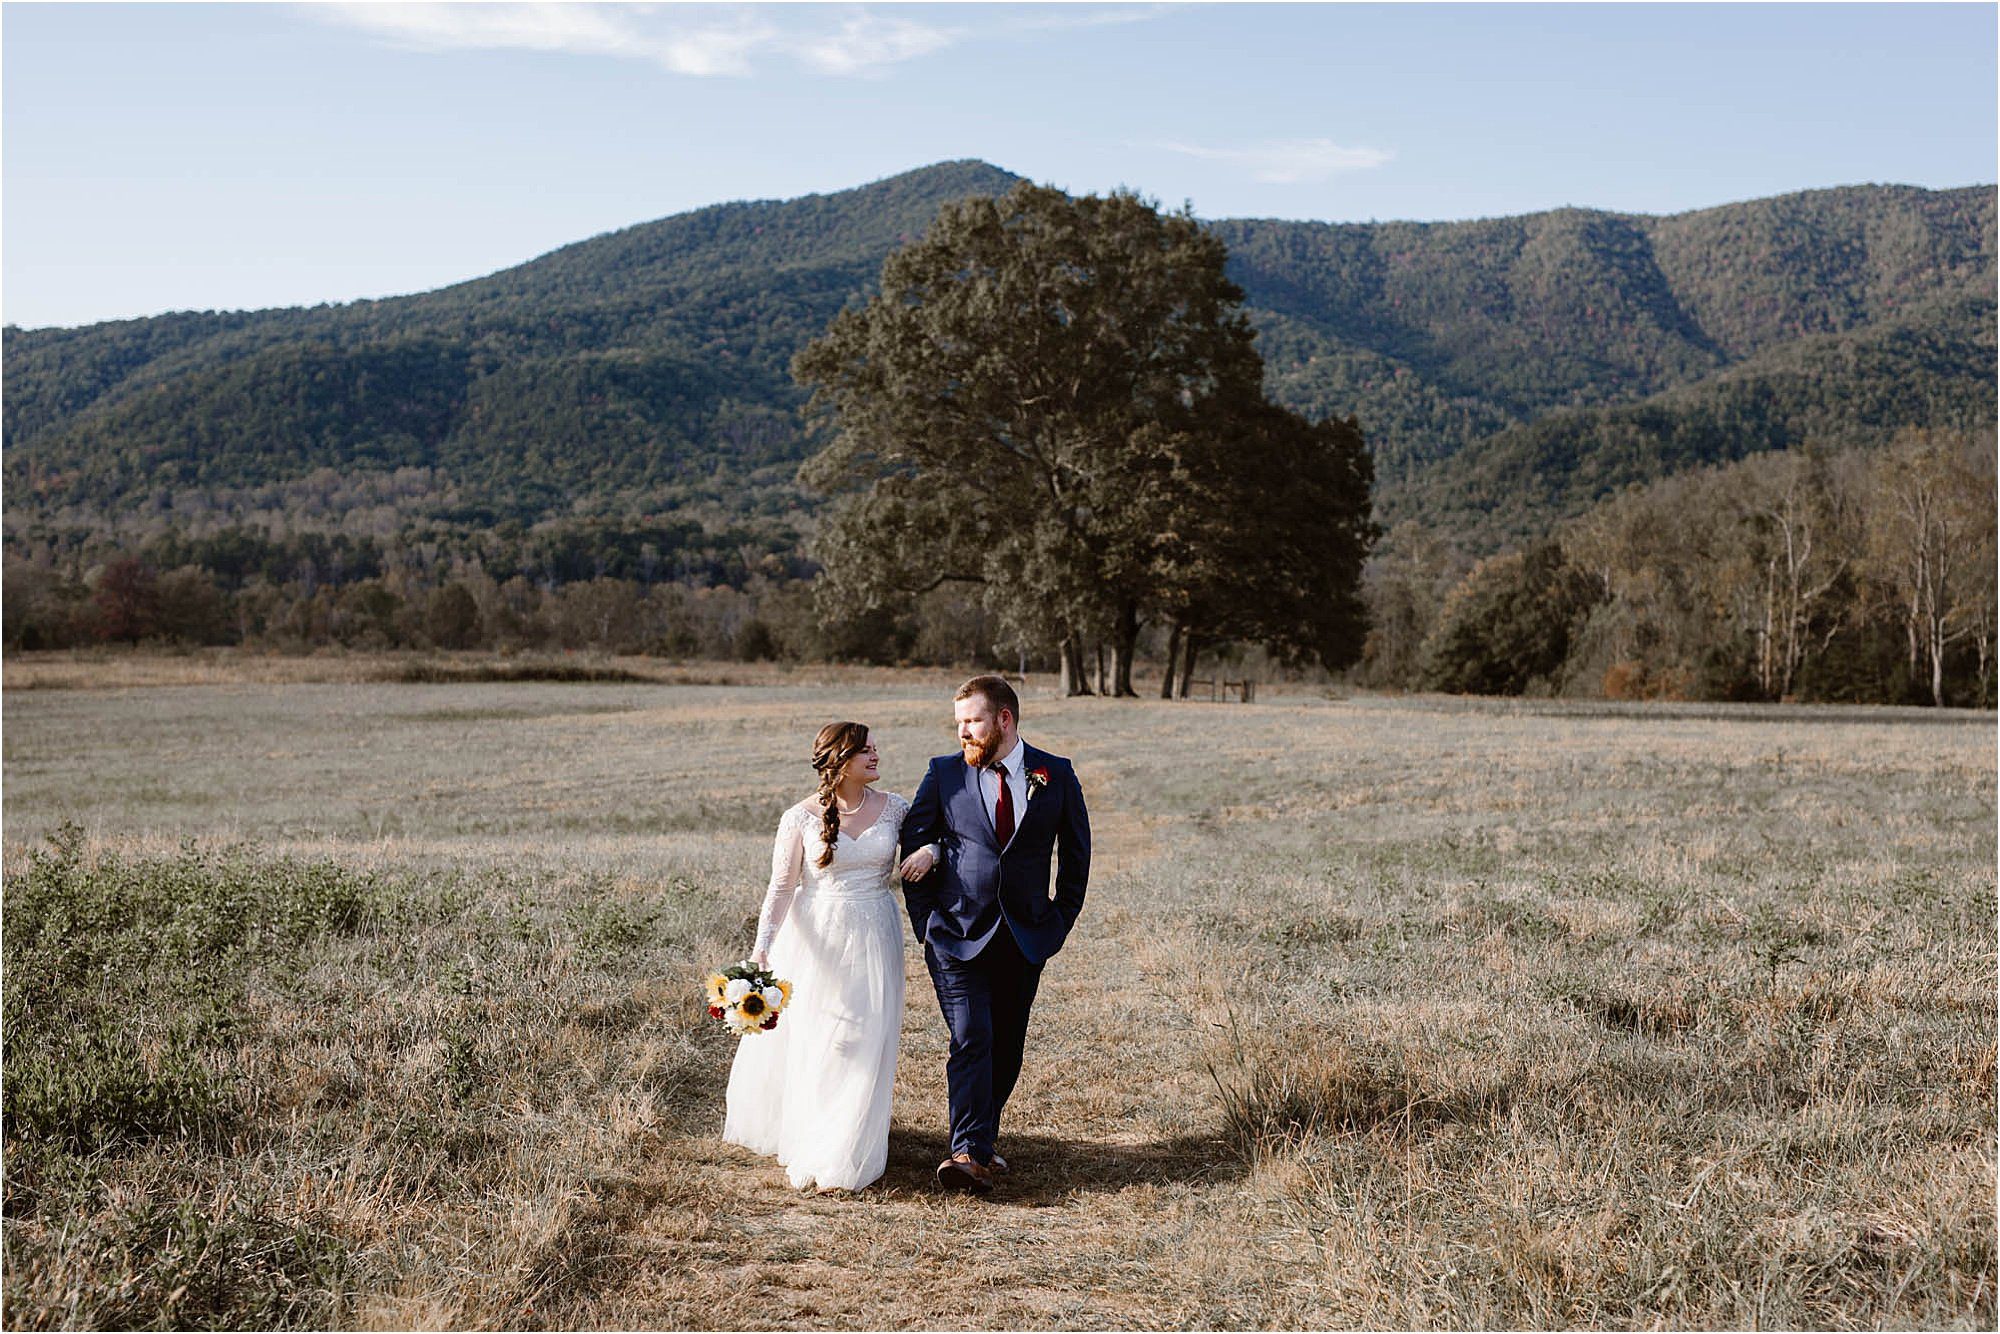 bride and groom walk along path in open field